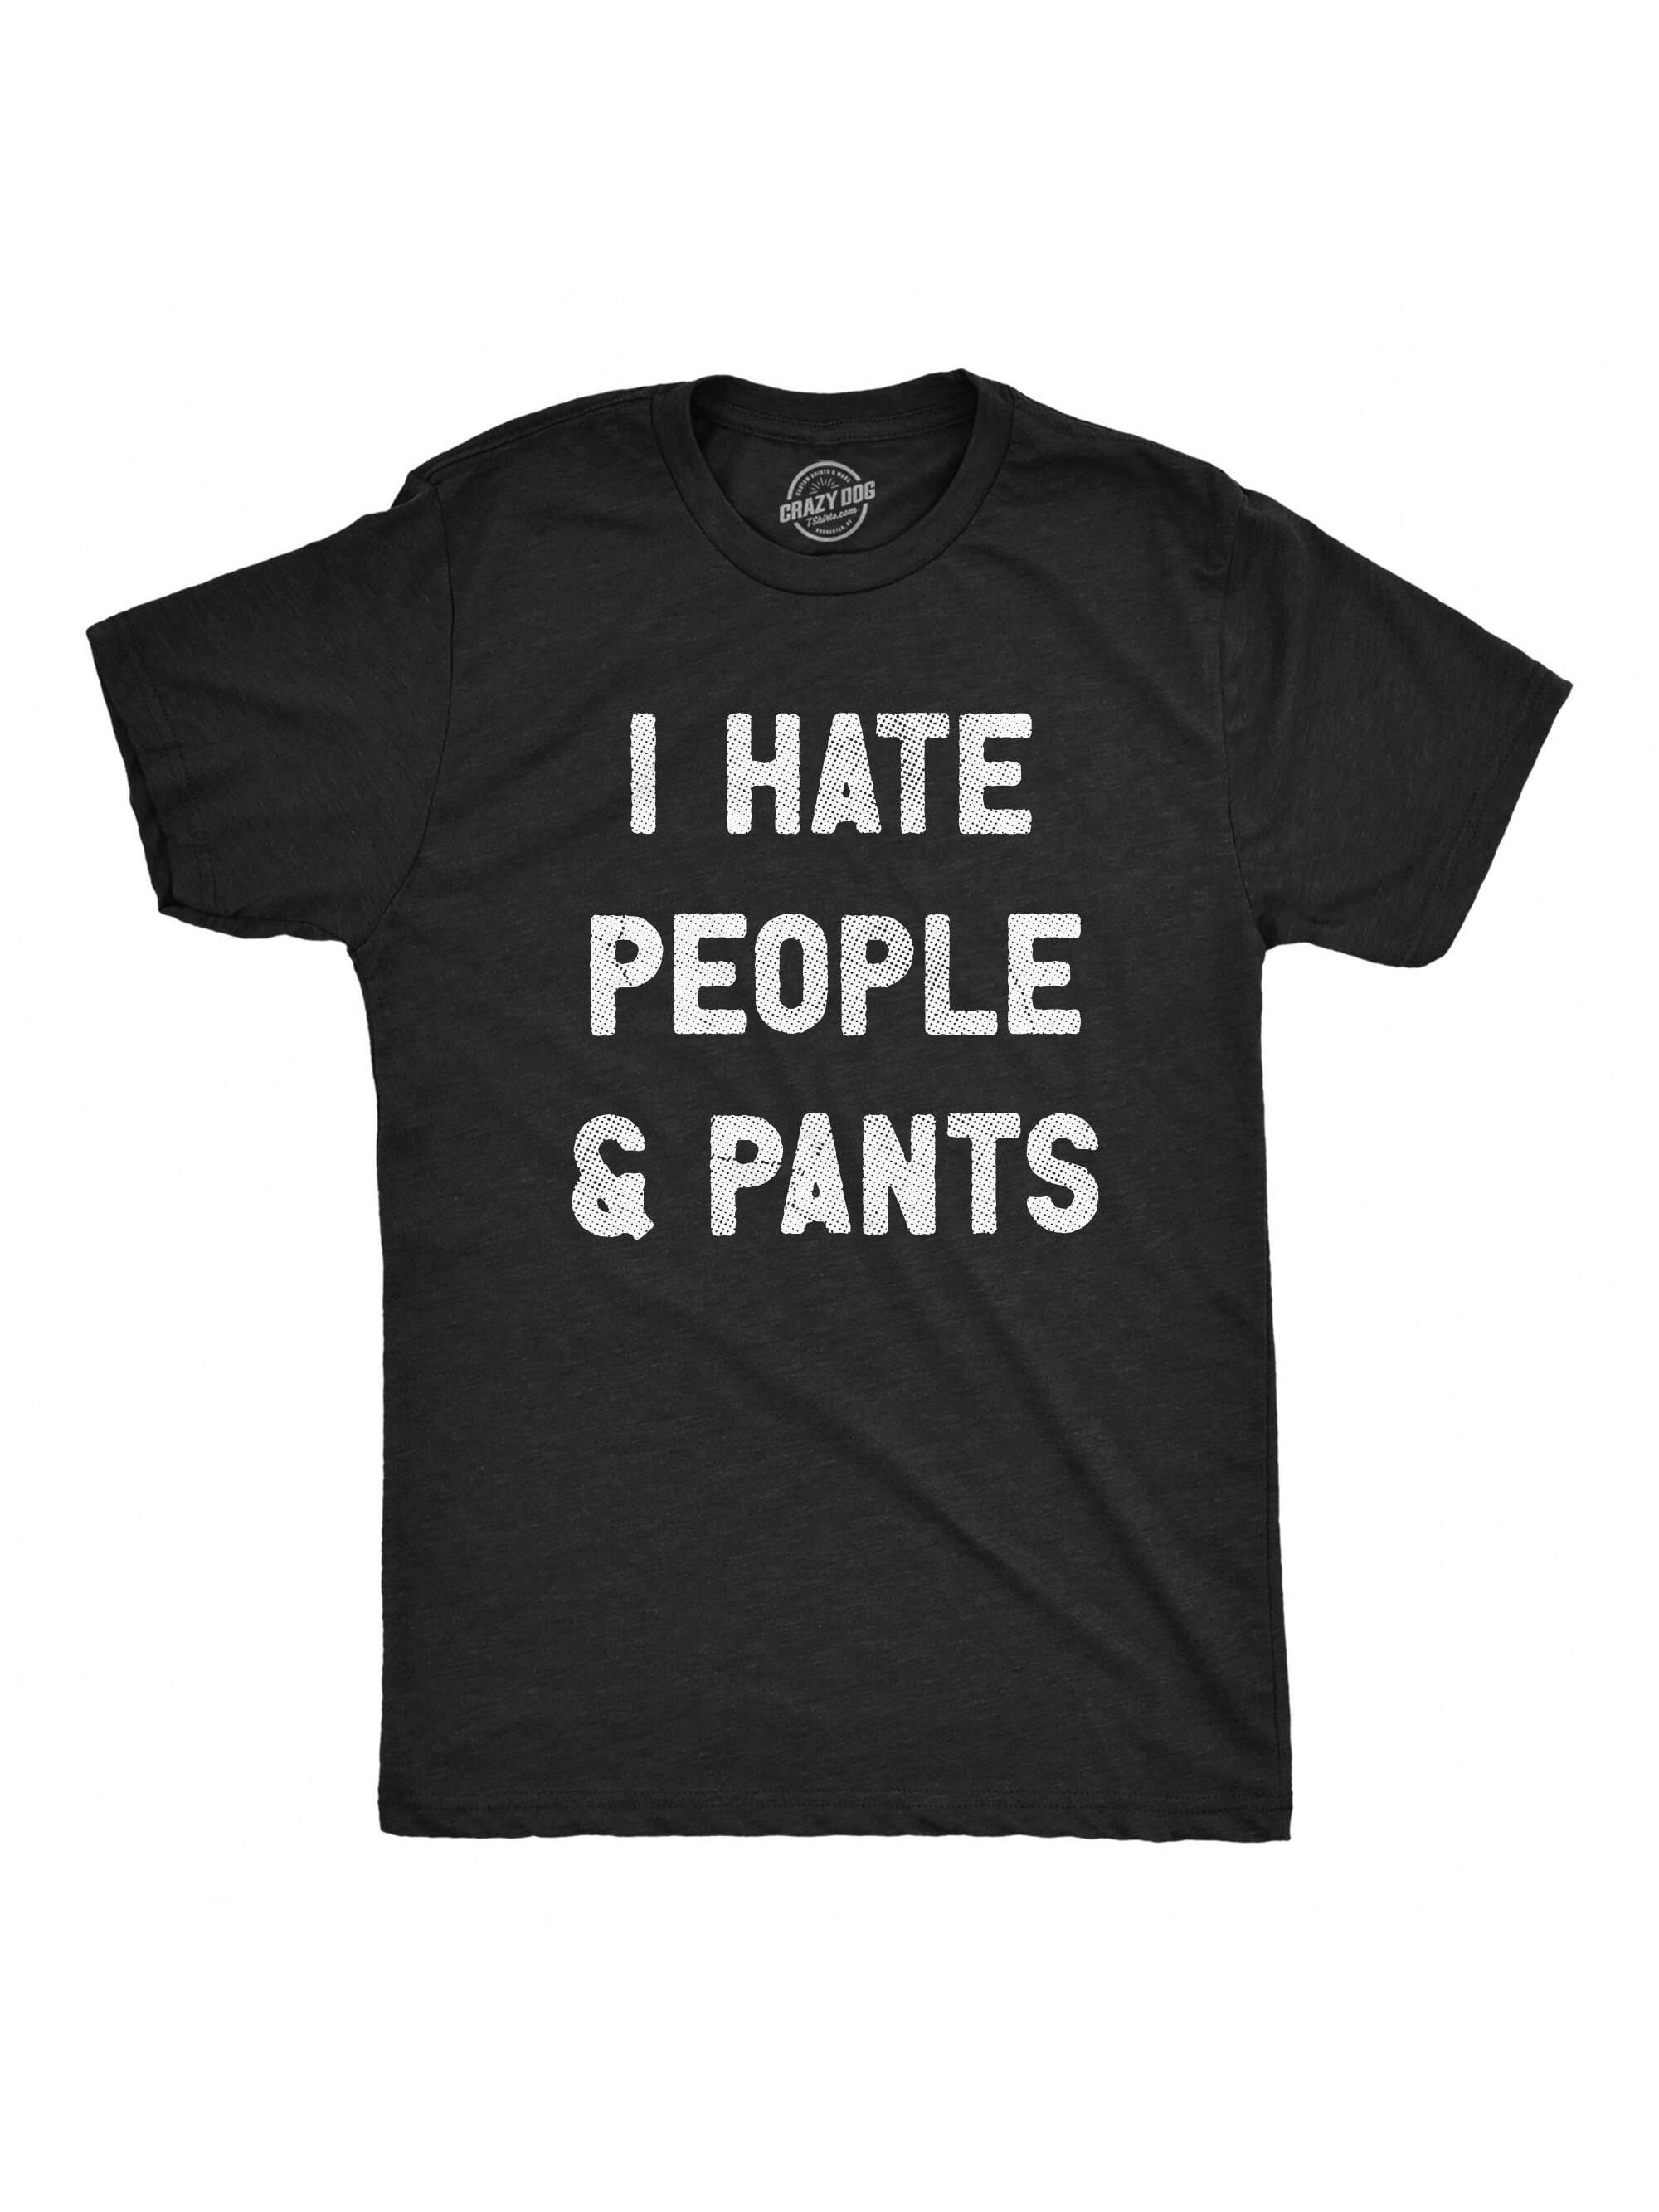 Мужская футболка «I Hate People And Pants» с забавной интровертной шуткой для парней (черный Хизер — БРЮКИ)